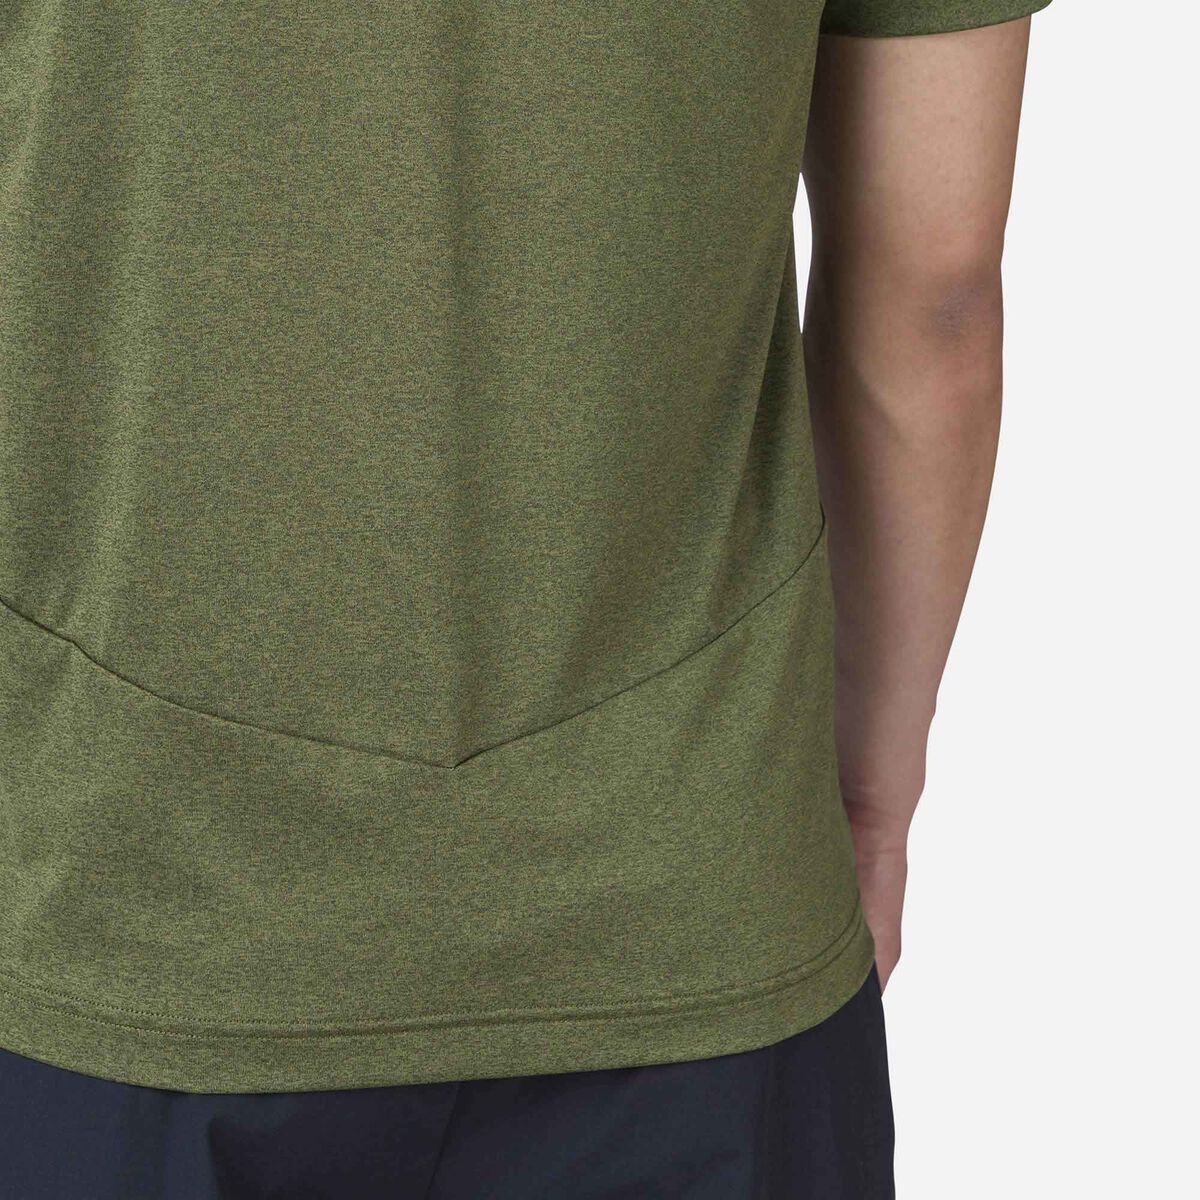 Rossignol Camiseta Slub Active para hombre green